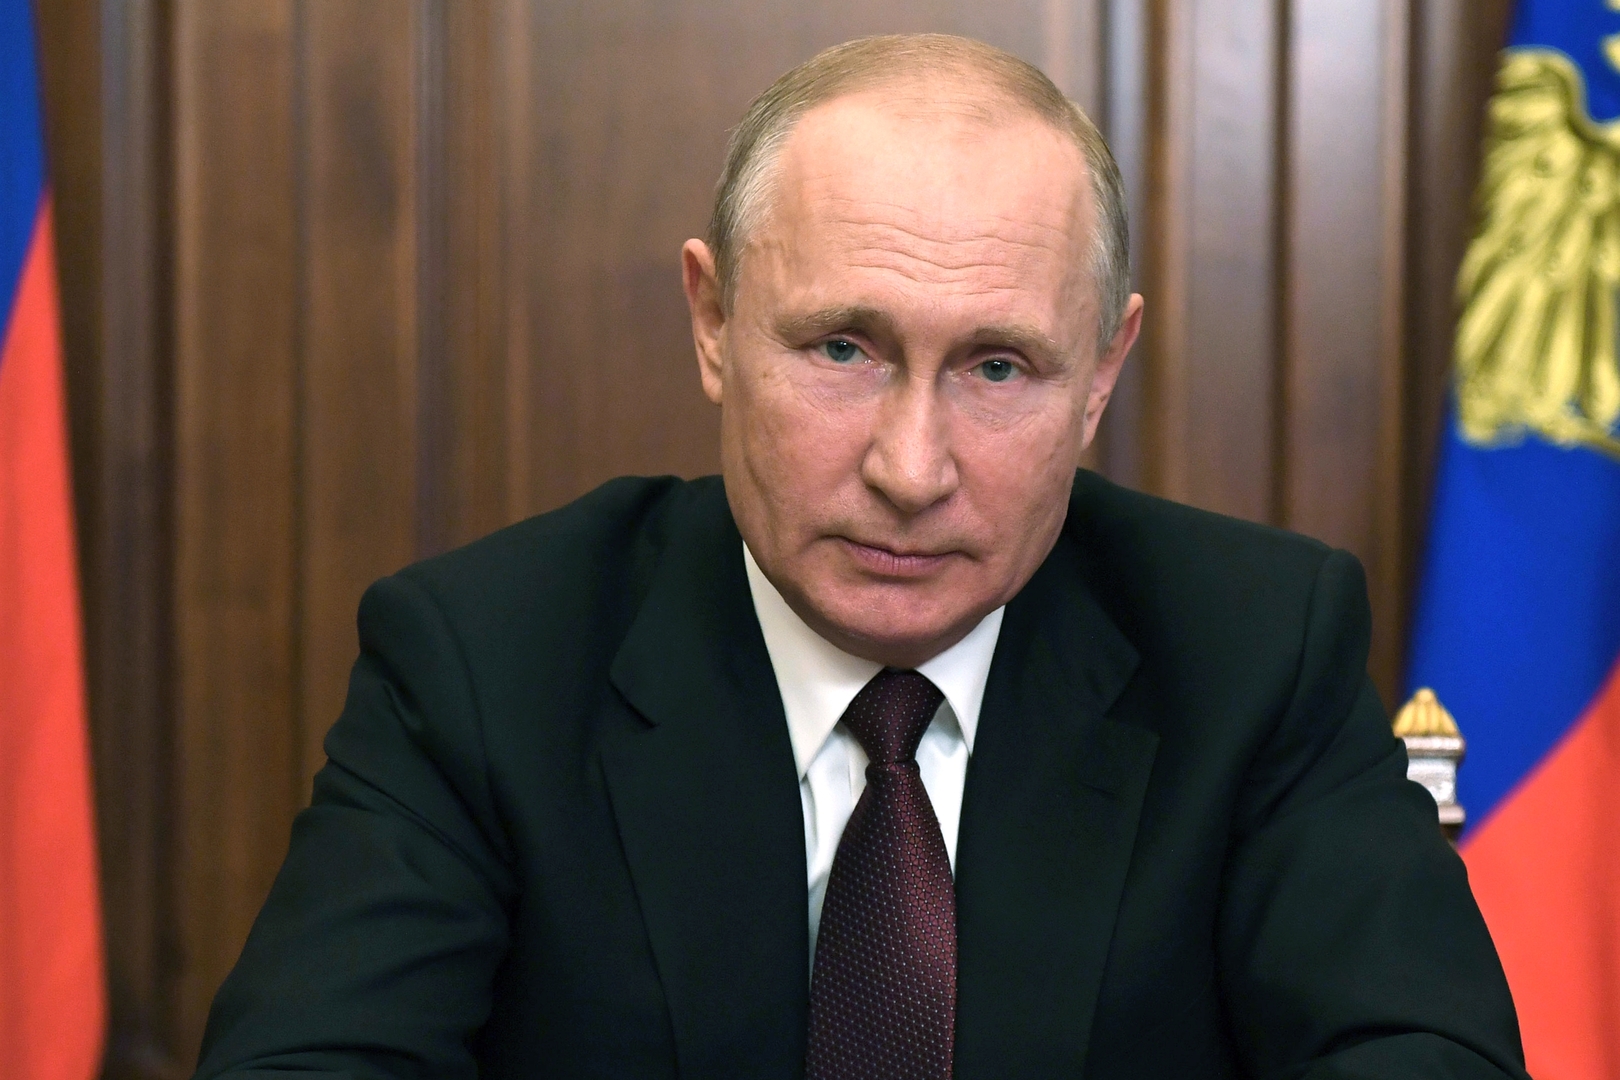 بوتين يعلن عن إجراءات لدعم الأسر والشركات في روسيا